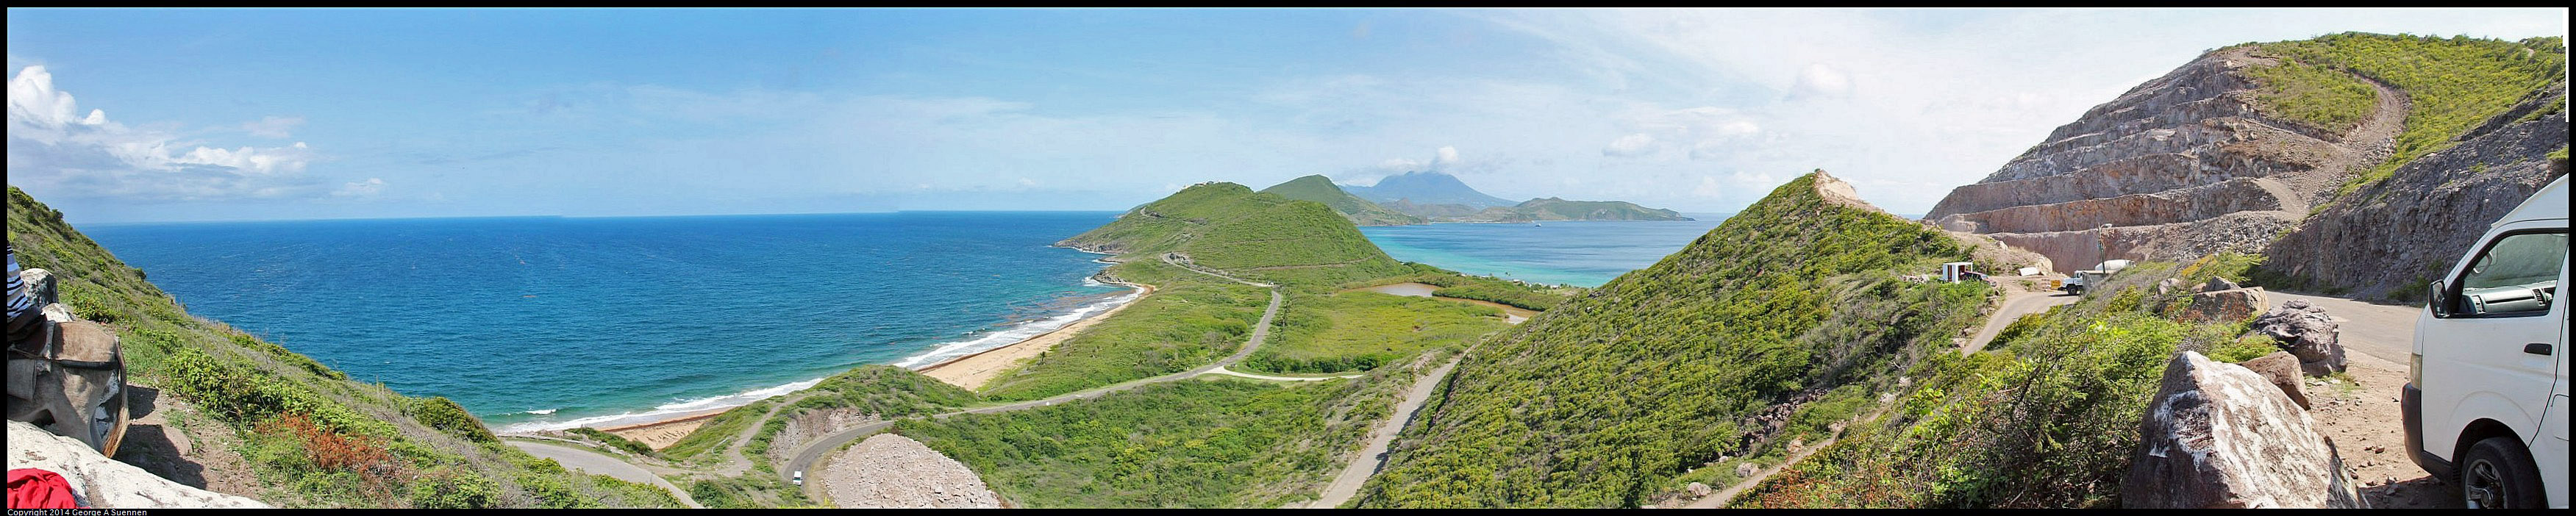 St_Kitts.jpg - St Kitts -  Towards Nevis